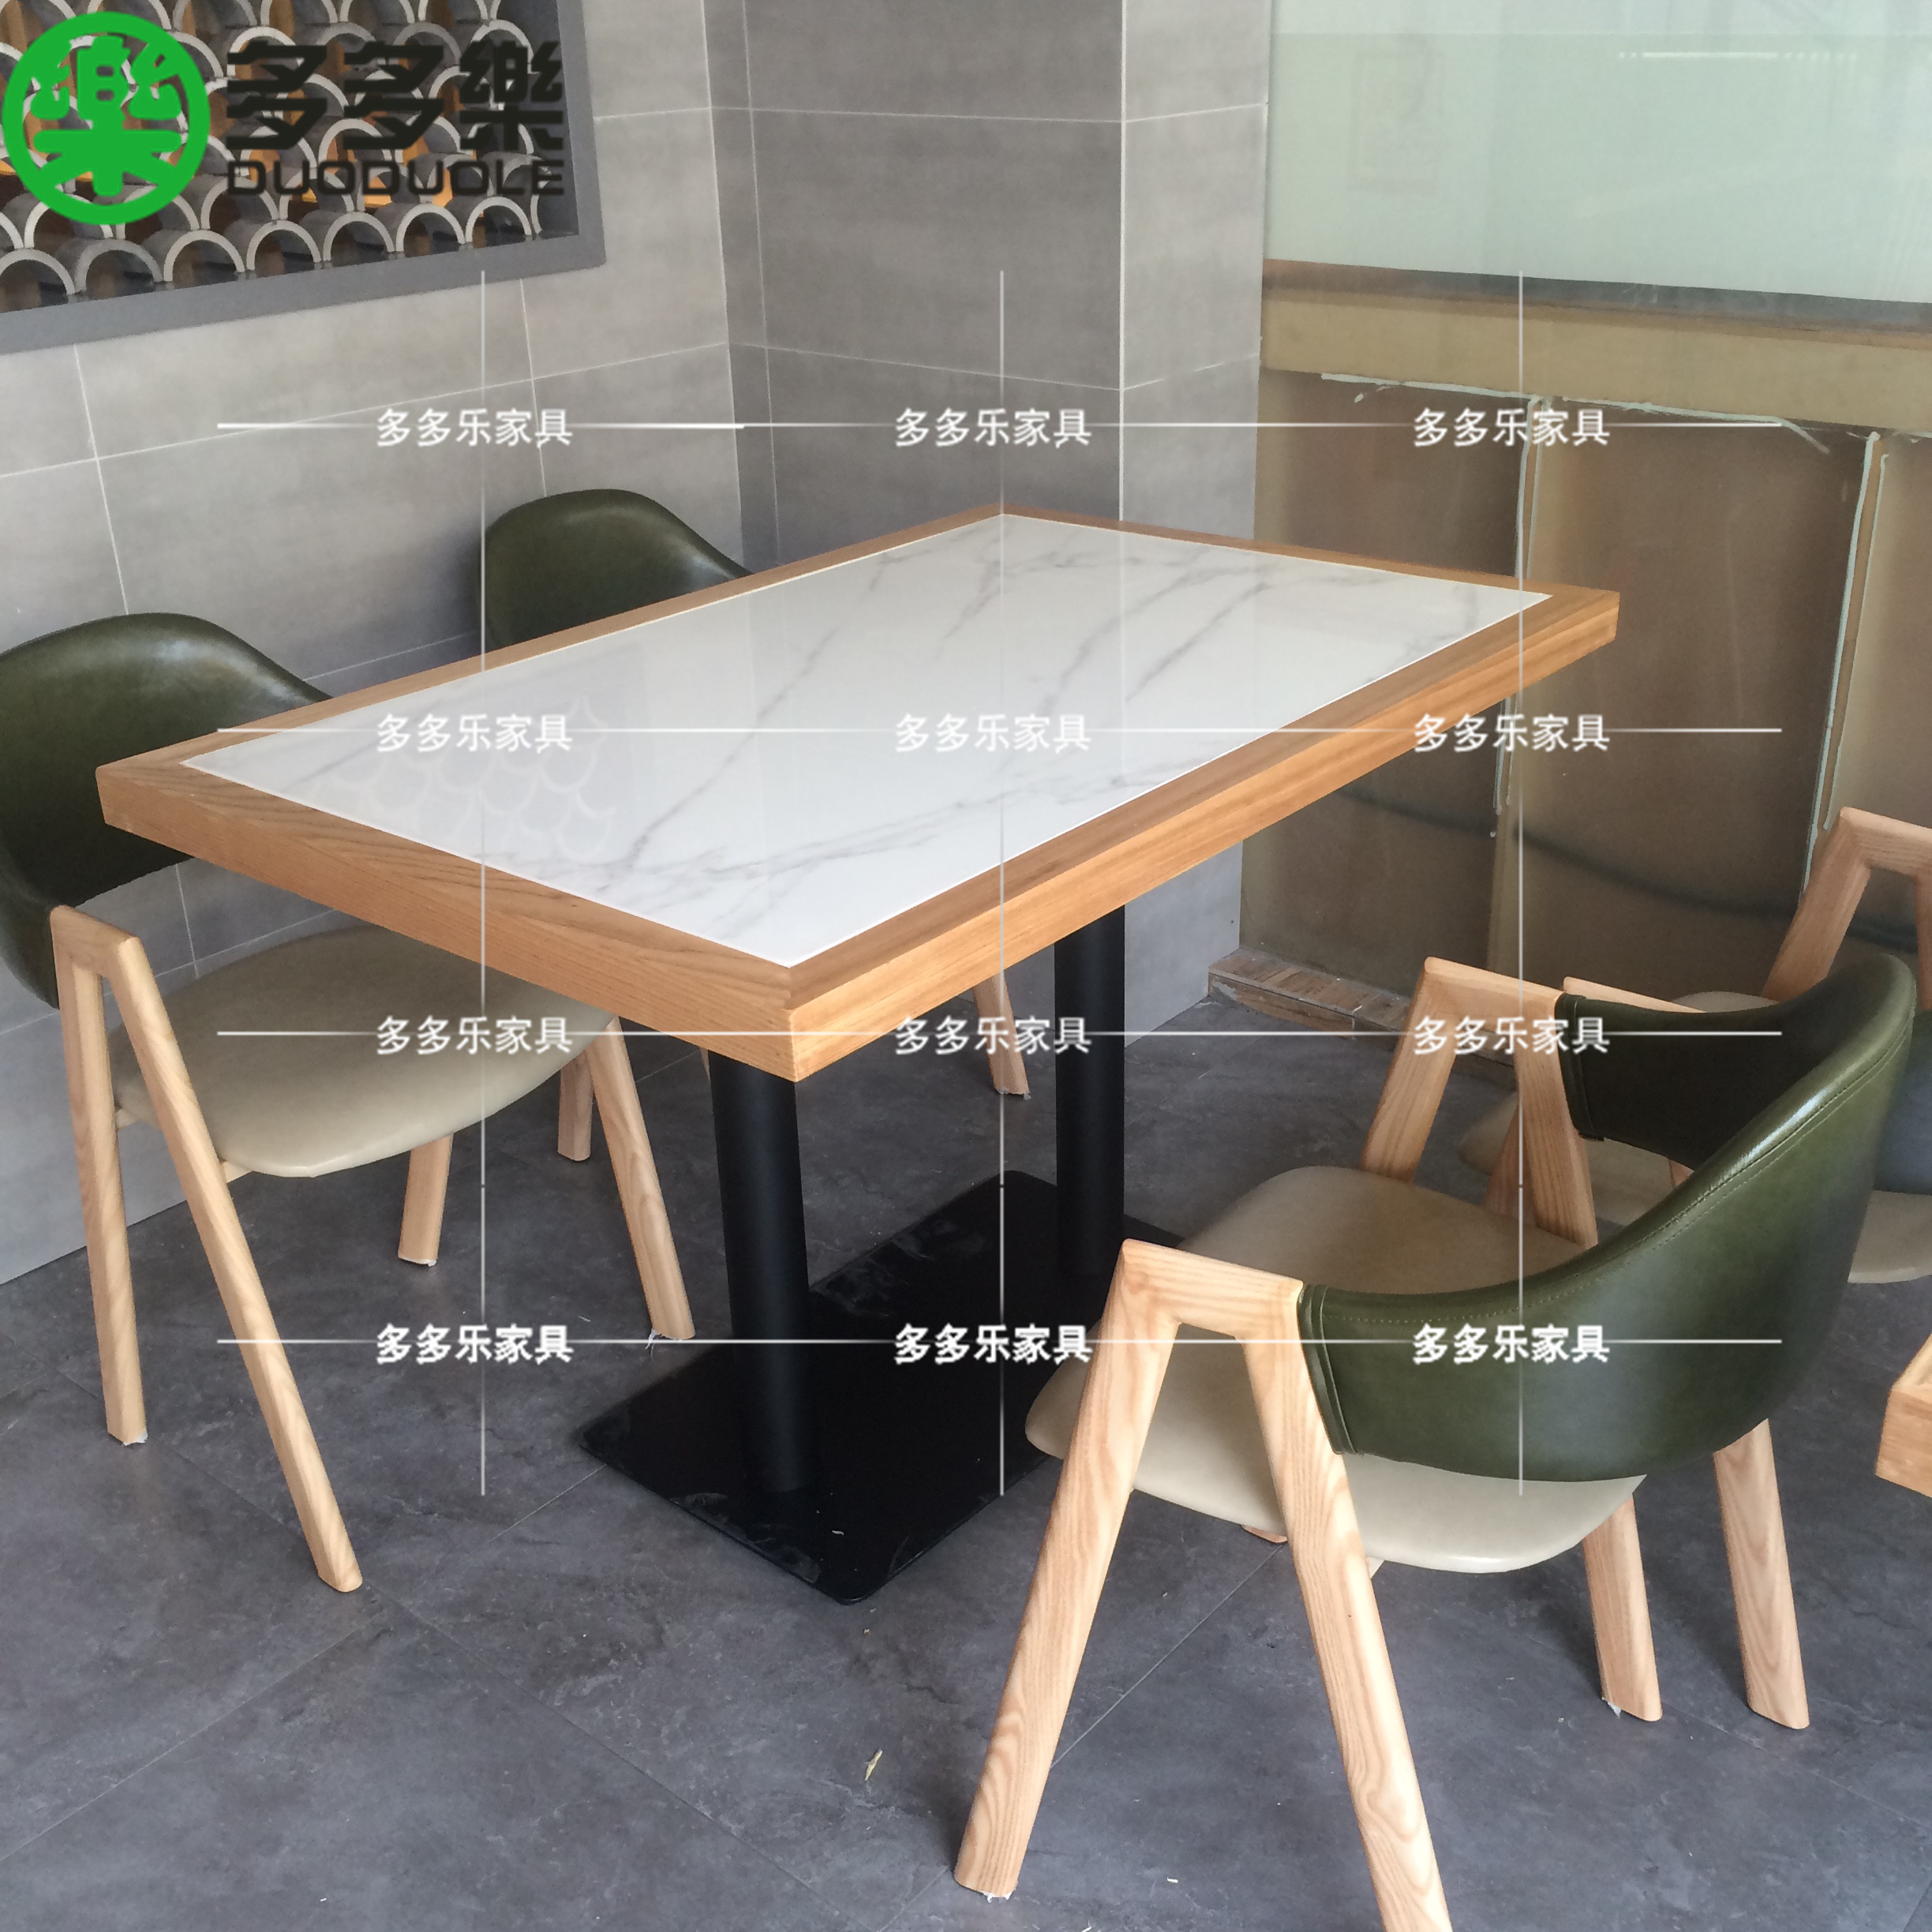 现代简约实木餐桌椅供应 新中式餐饮家具定做厂家6